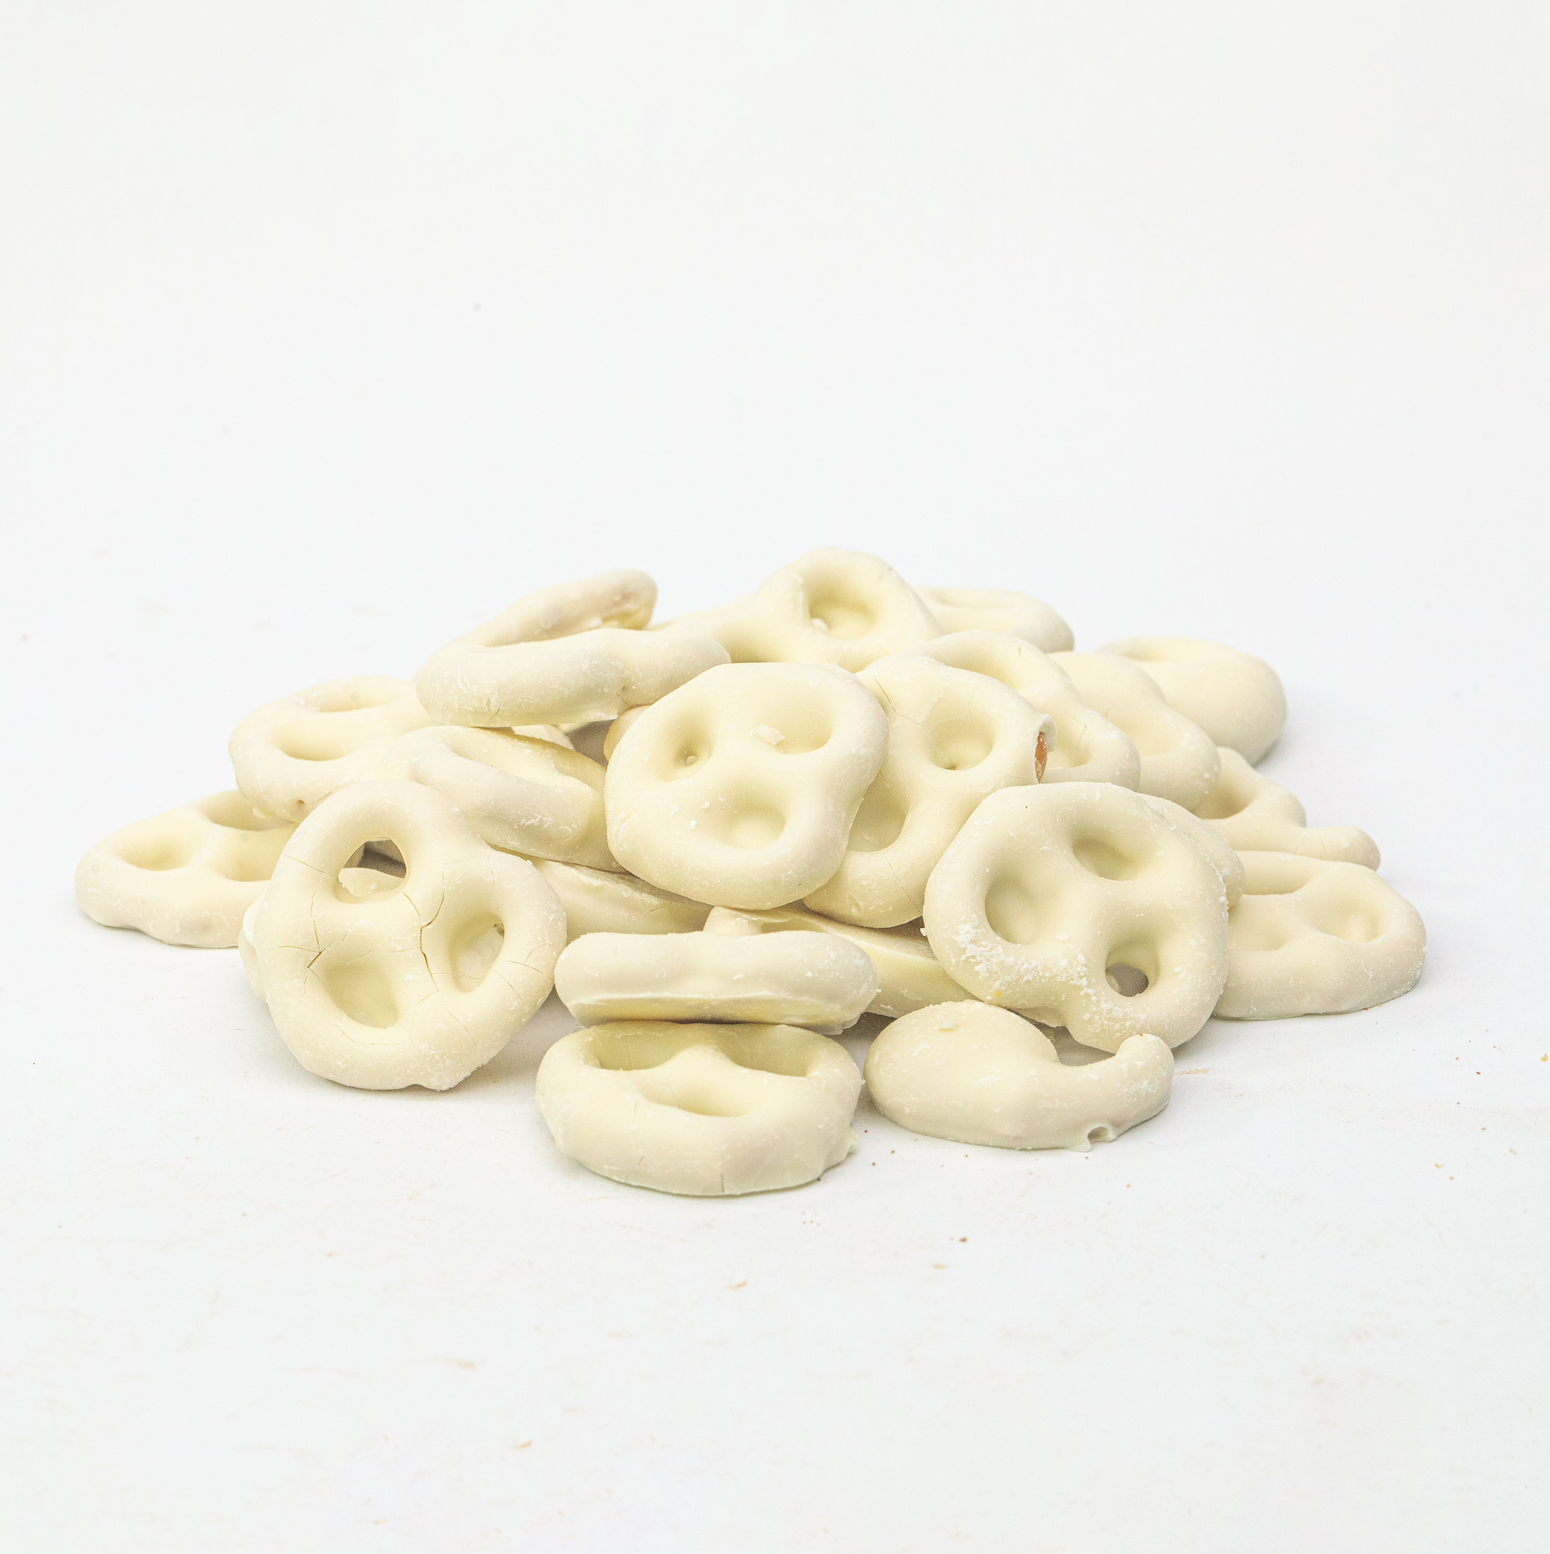 Yoghurt Coated Pretzels (Snacks) Image 1 - Naked Foods